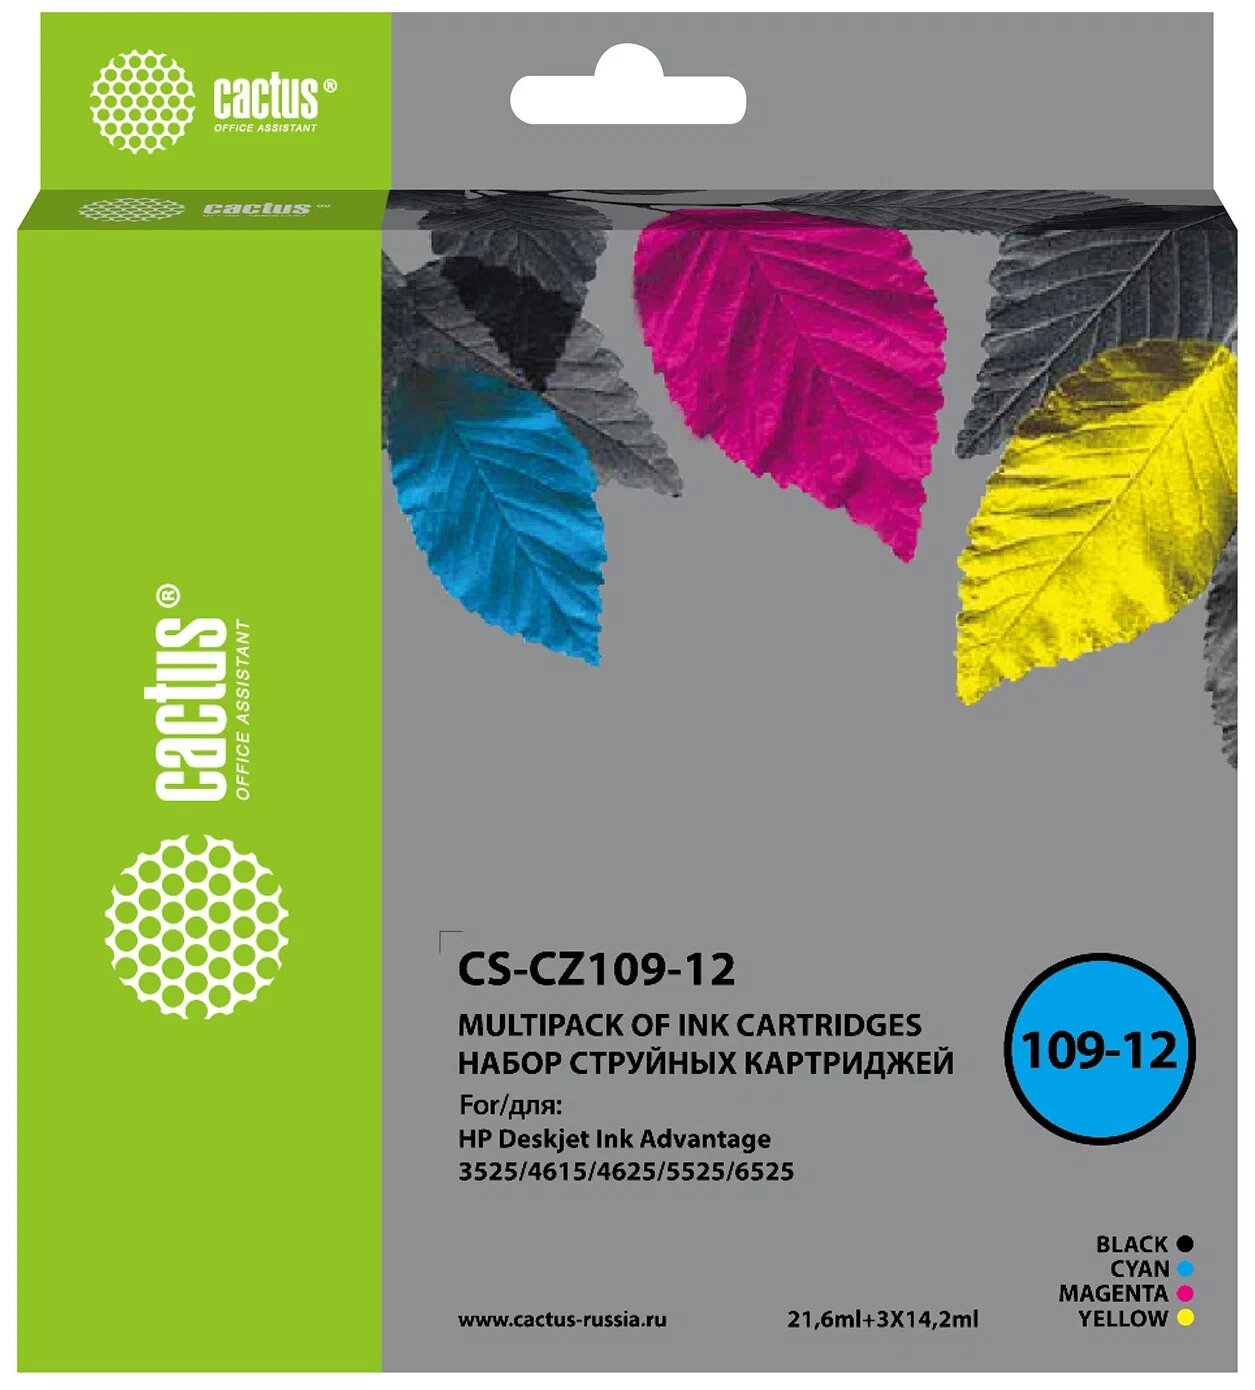 Картридж струйный Cactus 655 / CZ109AE / CZ110AE / CZ111AE / CZ112AE комплект, черный (black), голубой (cyan), пурпурный (magenta), желтый (yellow) 64,2 мл, 600 стр. при 5% заполнении листа A4 для HP (CS-CZ109-12)